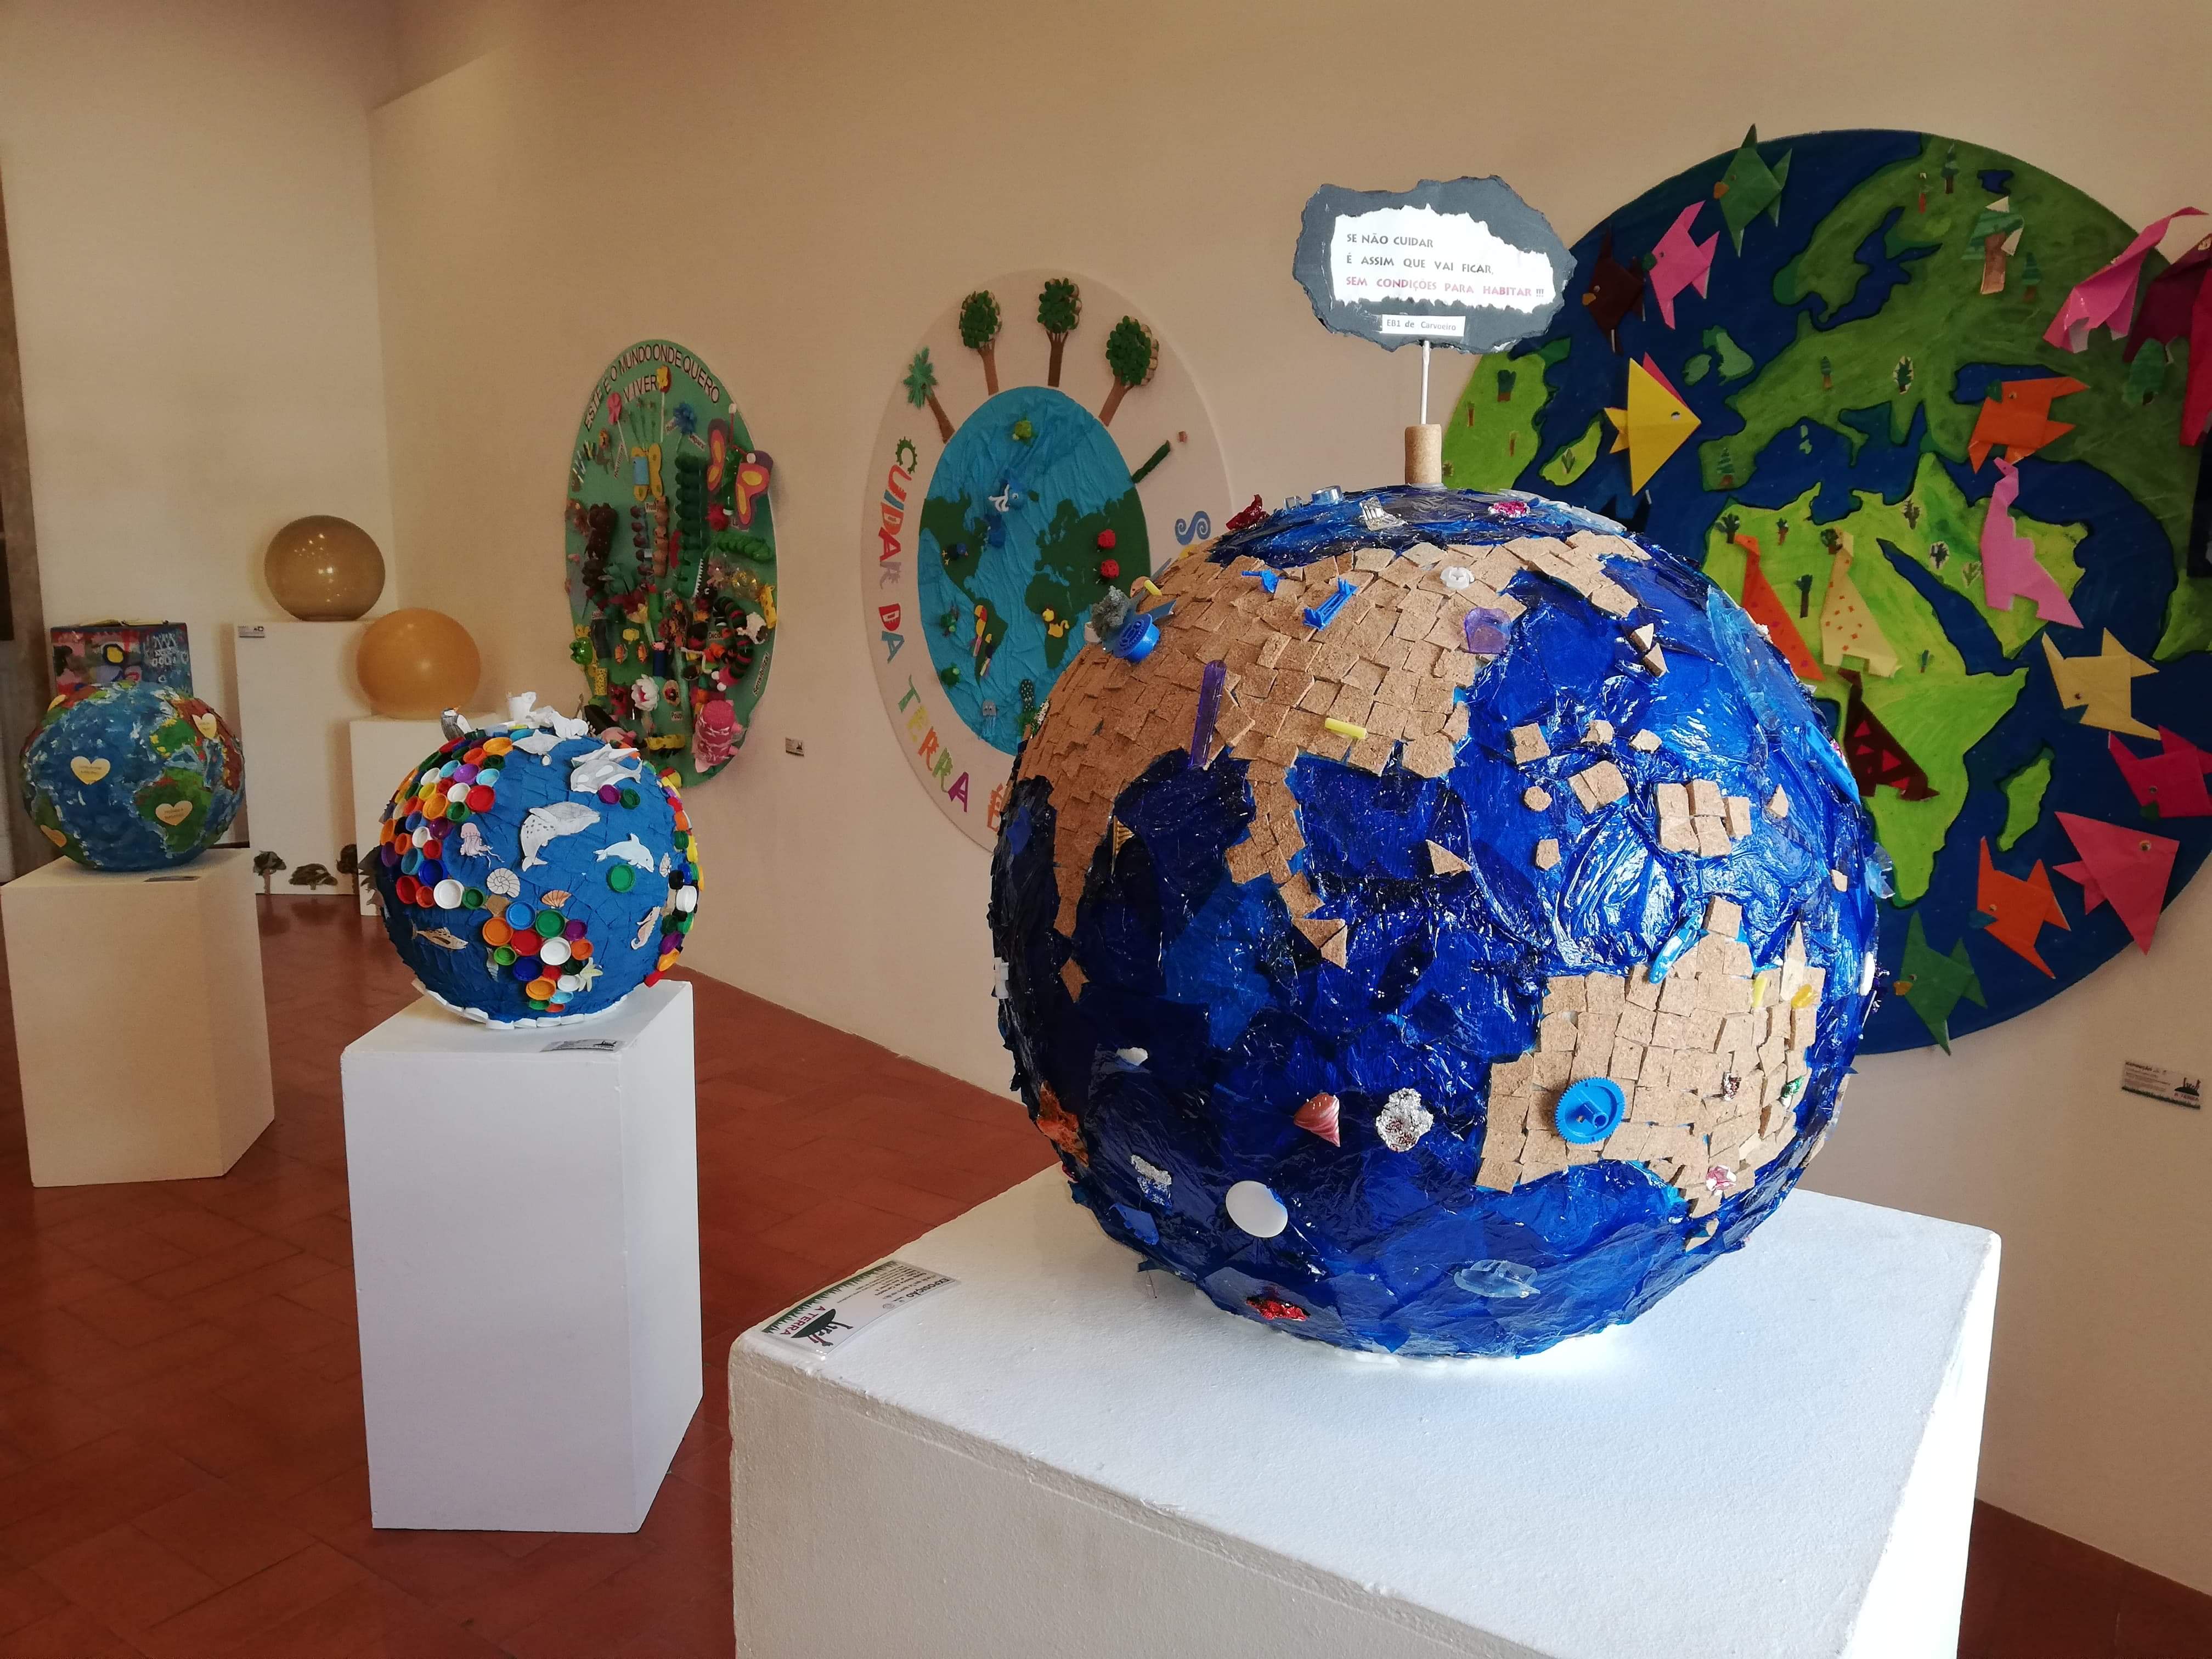 Centro Europe Direct abre portas a Exposição “A Terra”